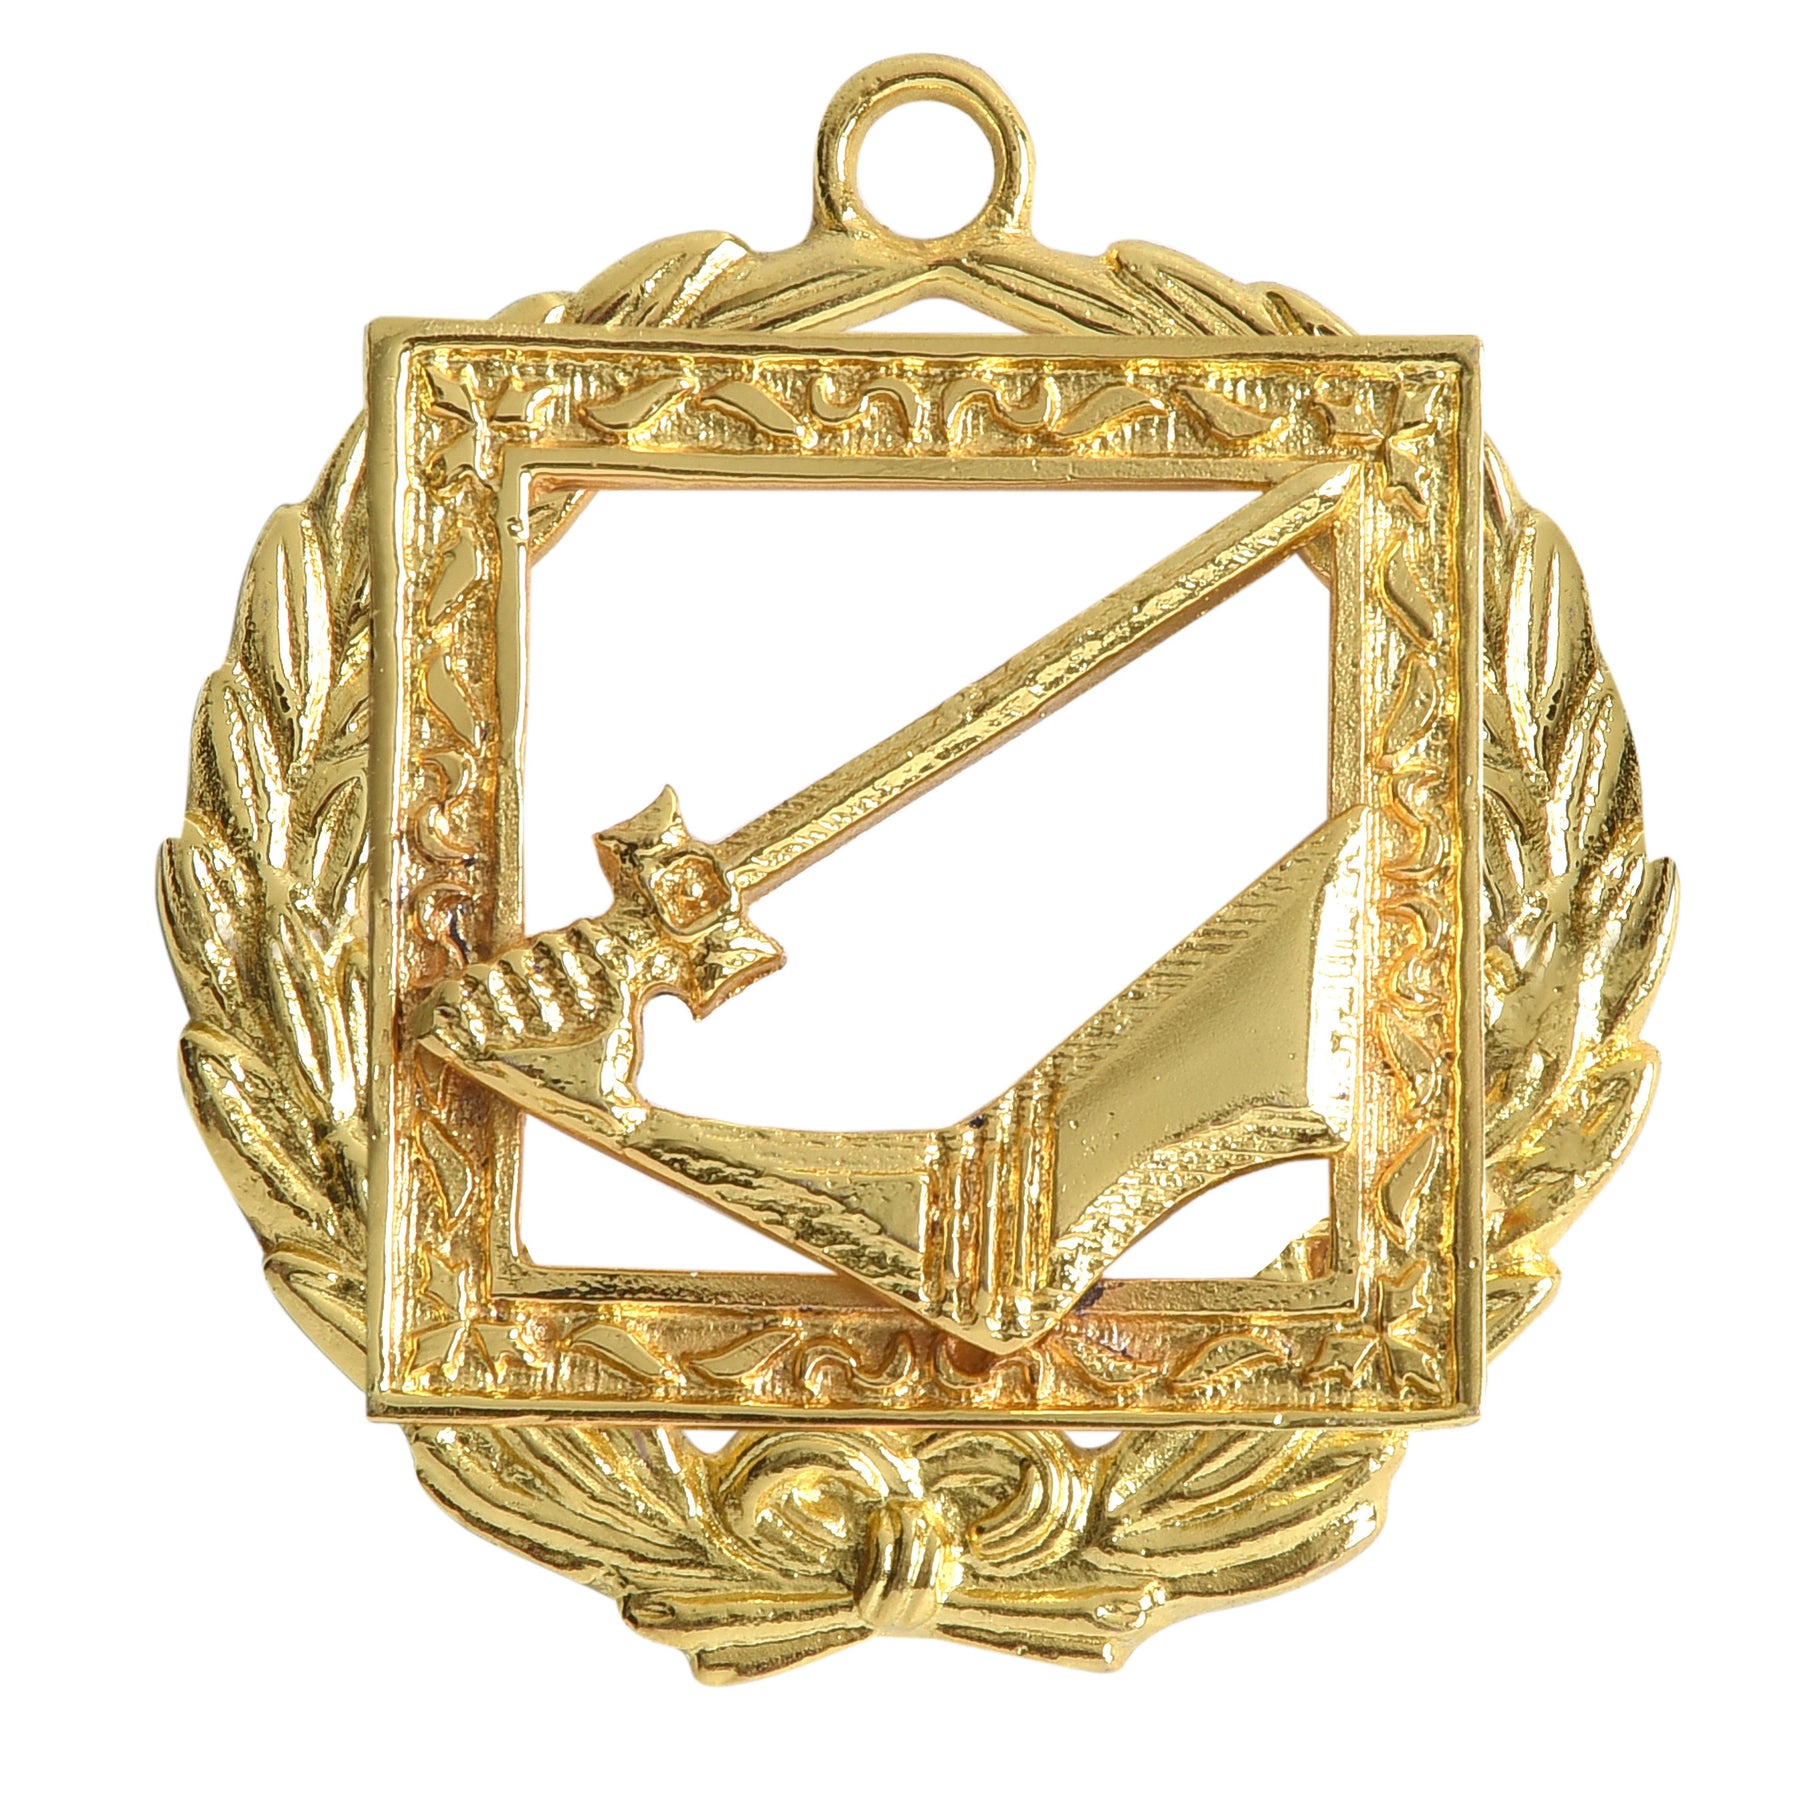 Grand Senior Warden Knights Templar Commandery Officer Collar Jewel - Gold Plated - Bricks Masons